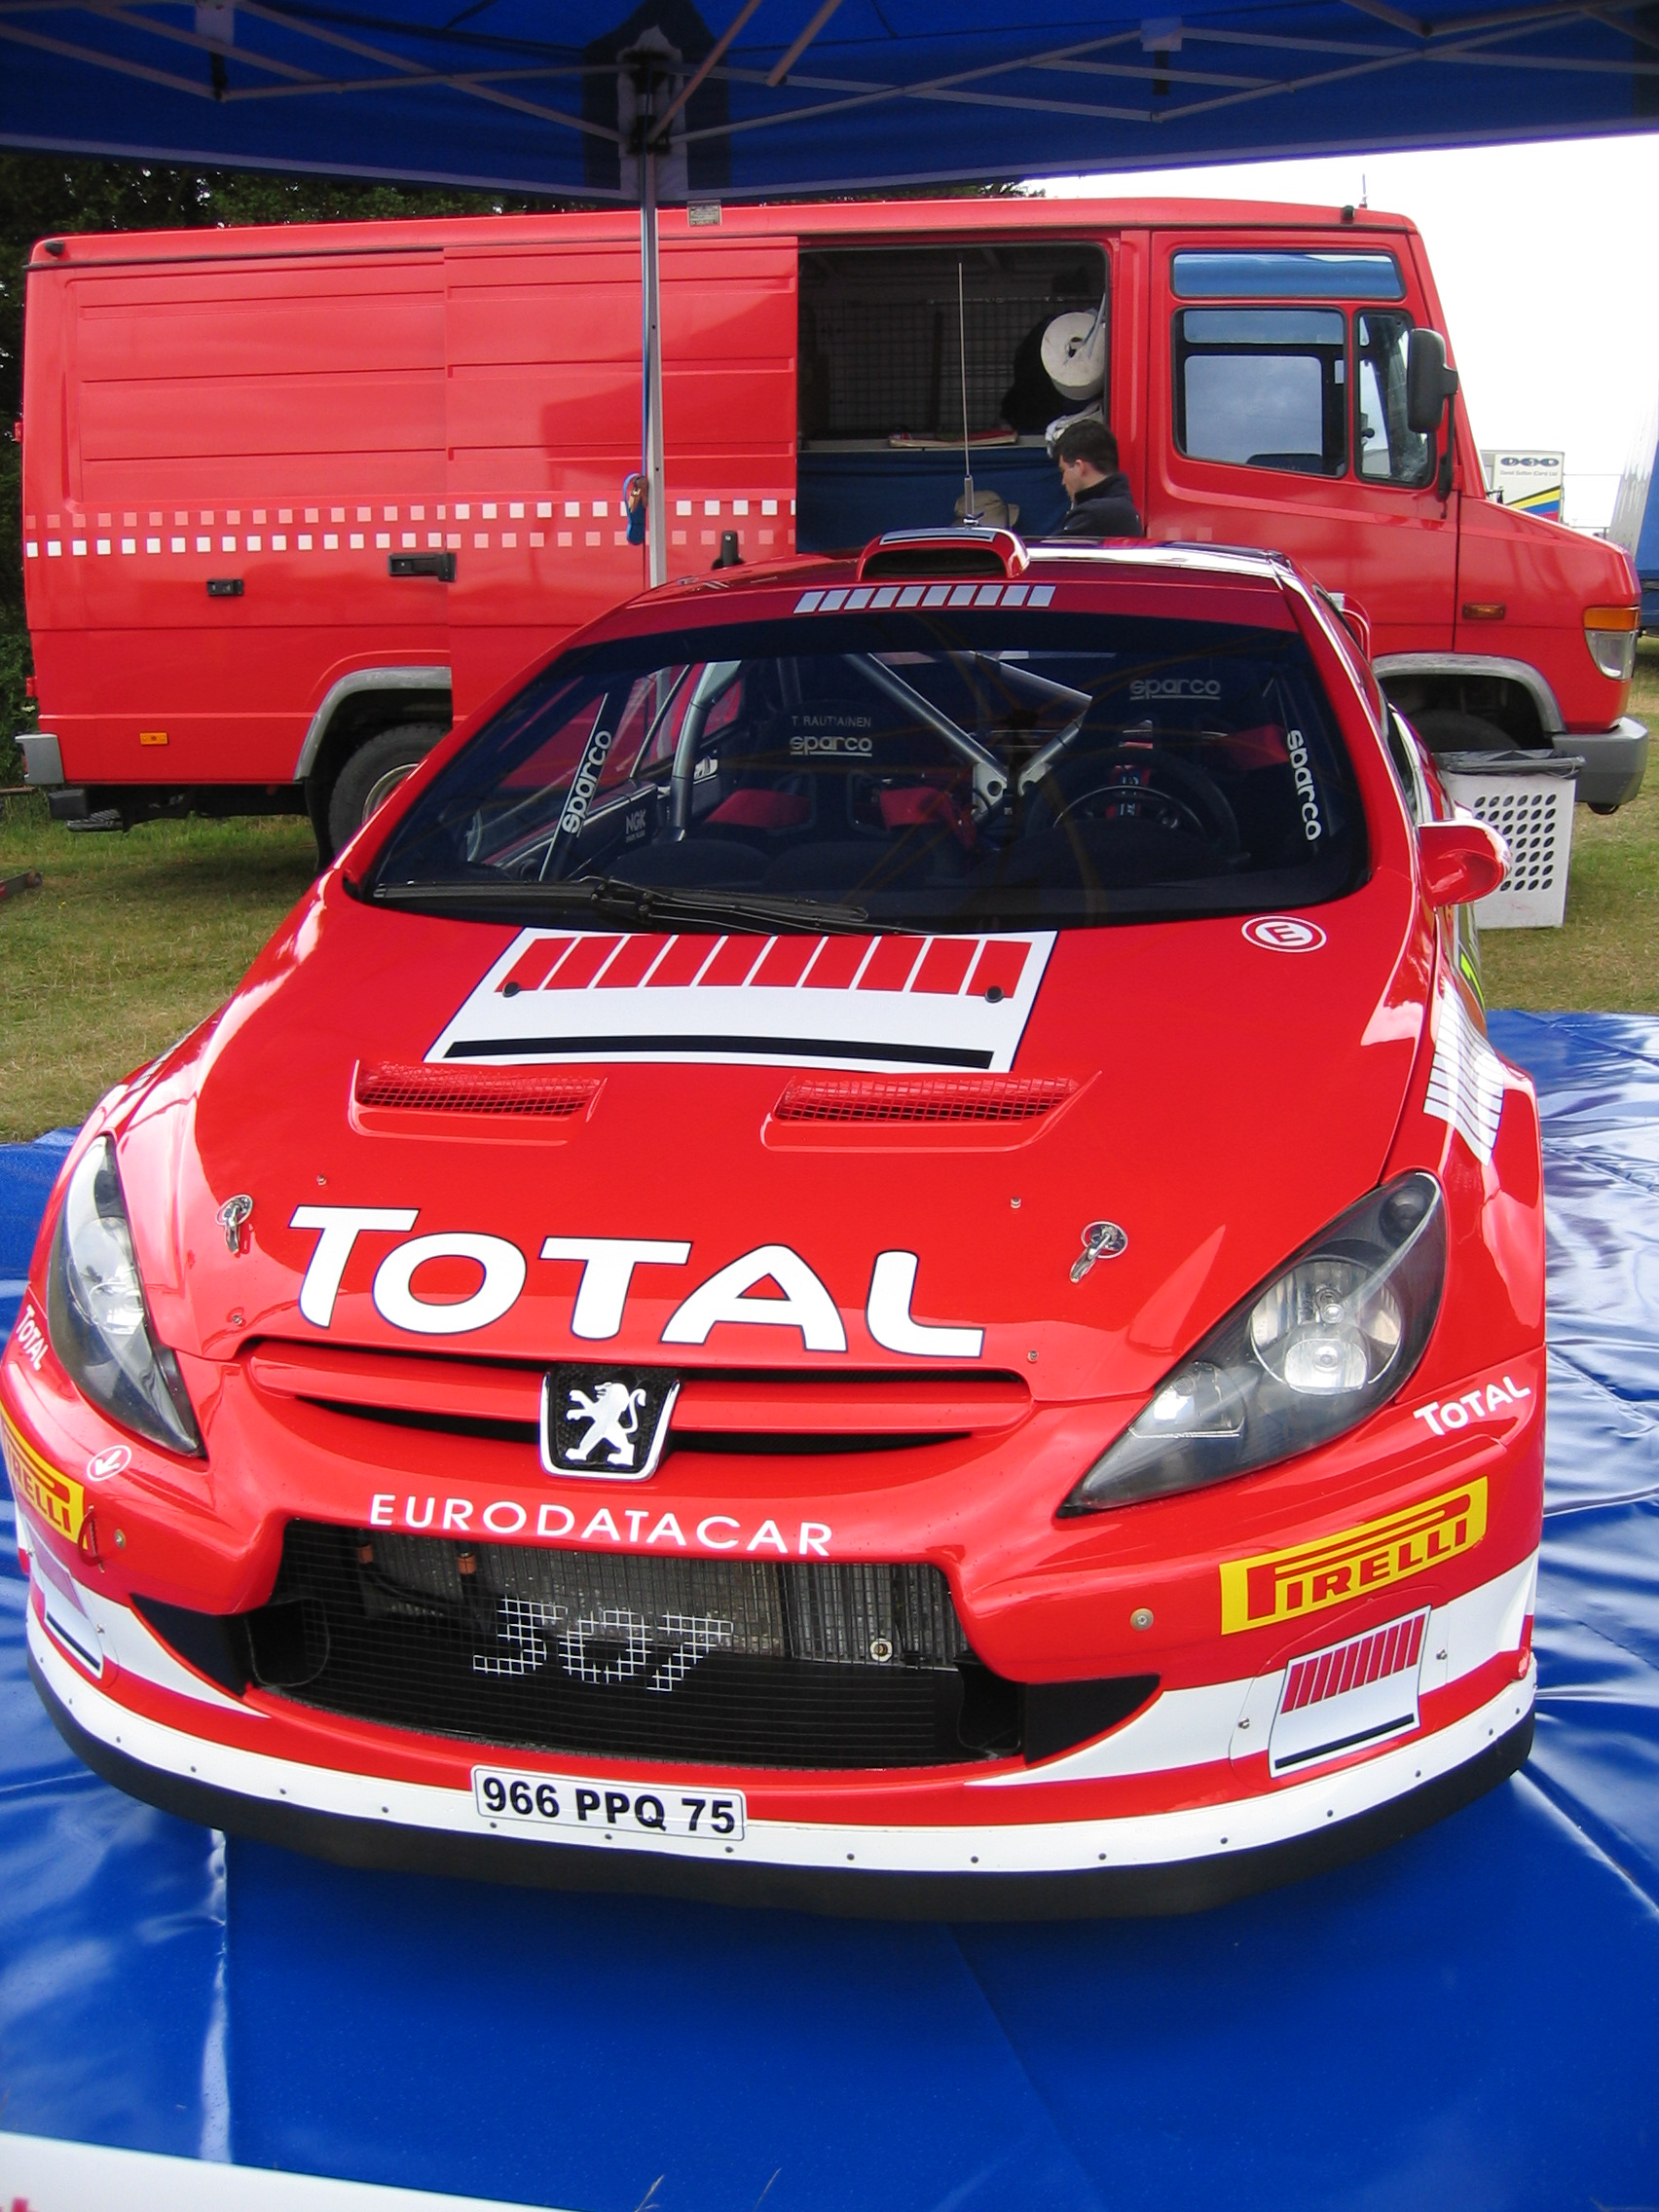 File:Peugeot 206 WRC - Side view.jpg - Wikipedia